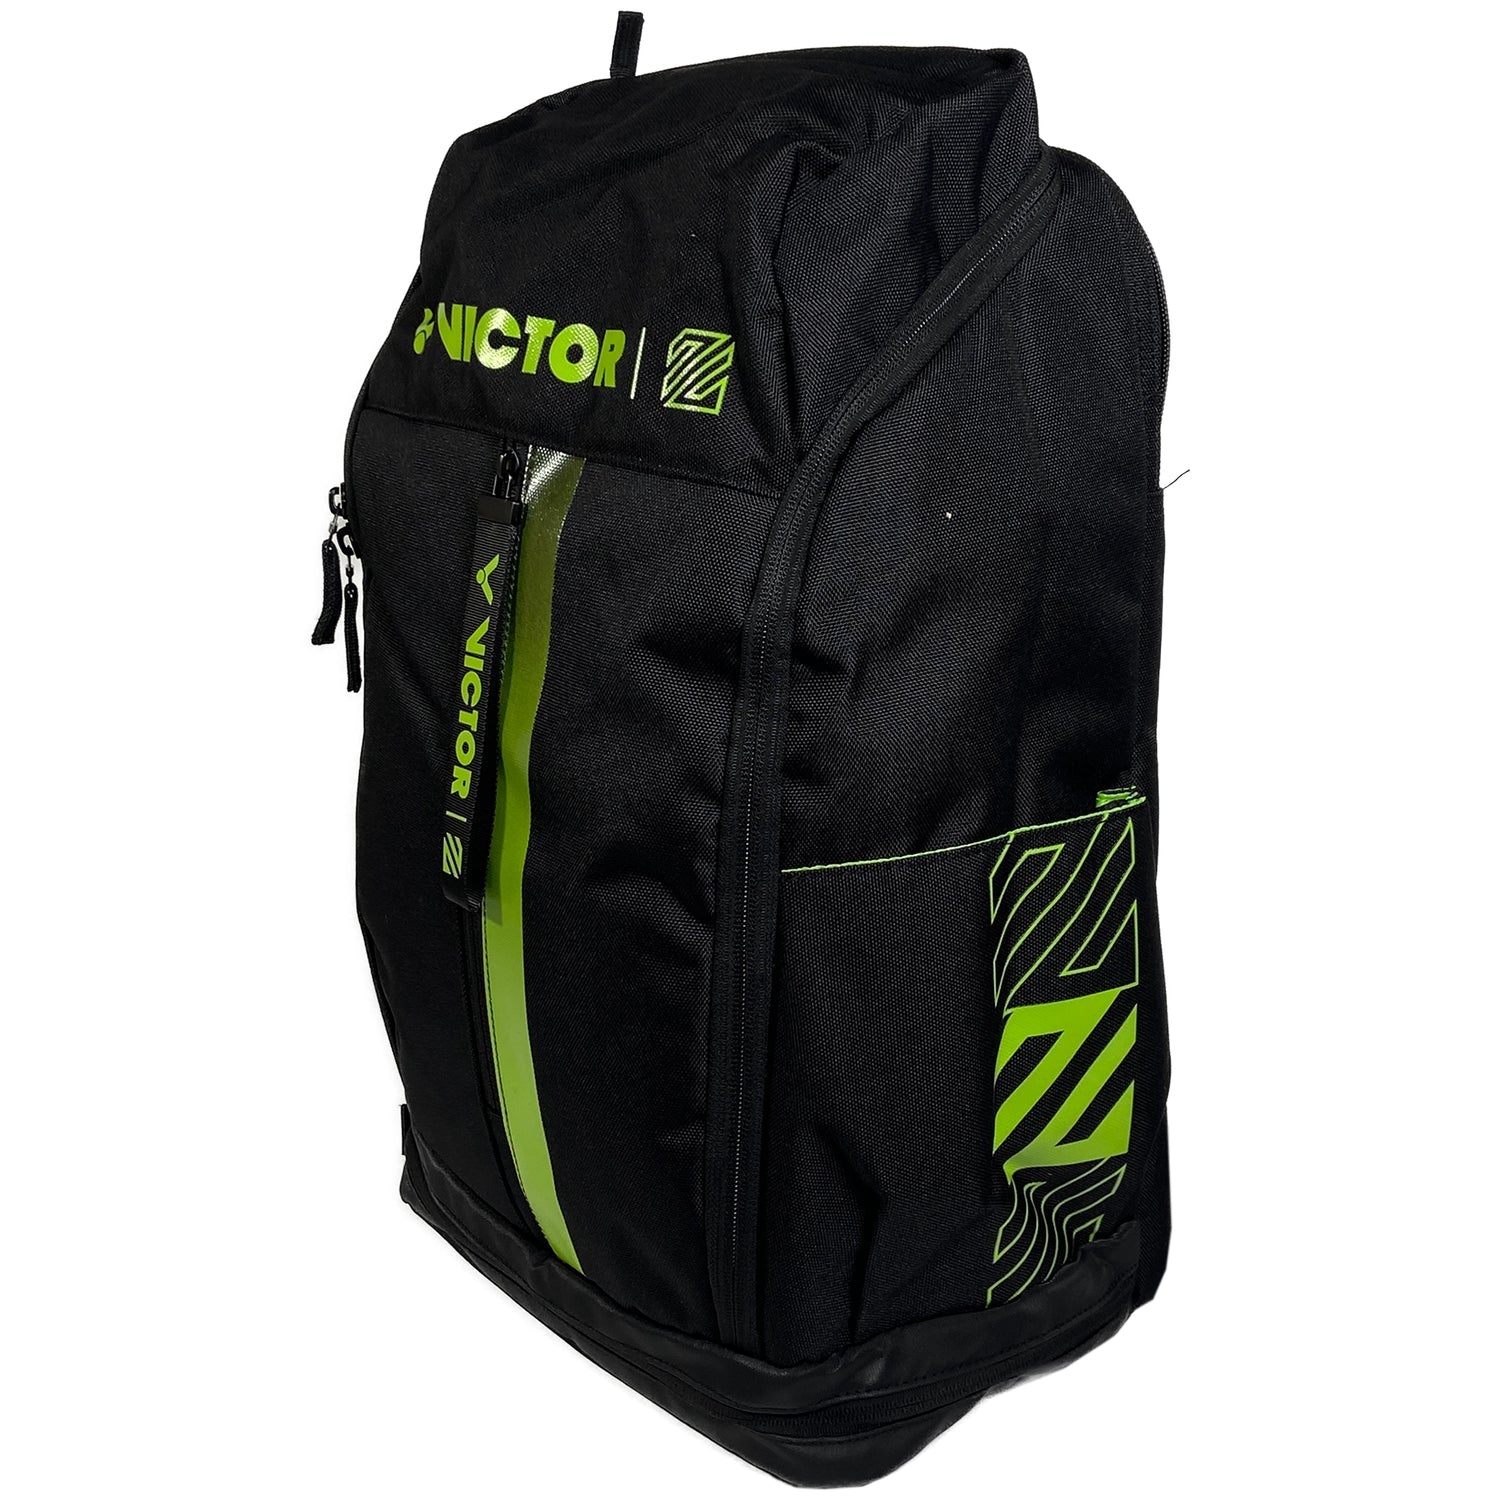 Victor BR-5010 LZJ Badminton Backpack